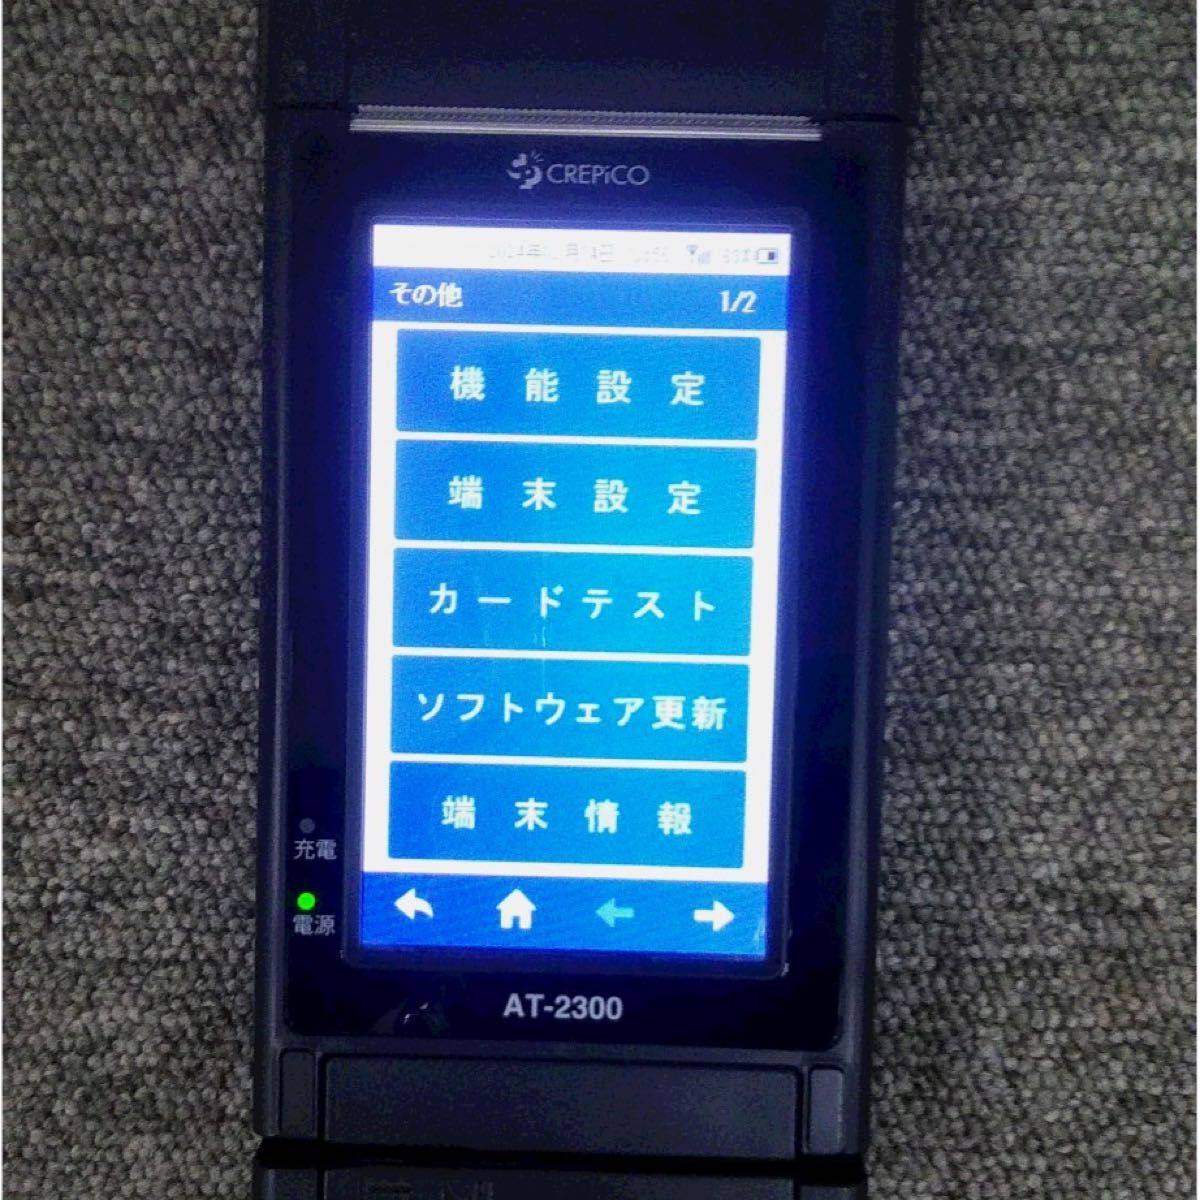 クレピコ　AT-2300 キャッシュレス決済・口座振替手続き端末